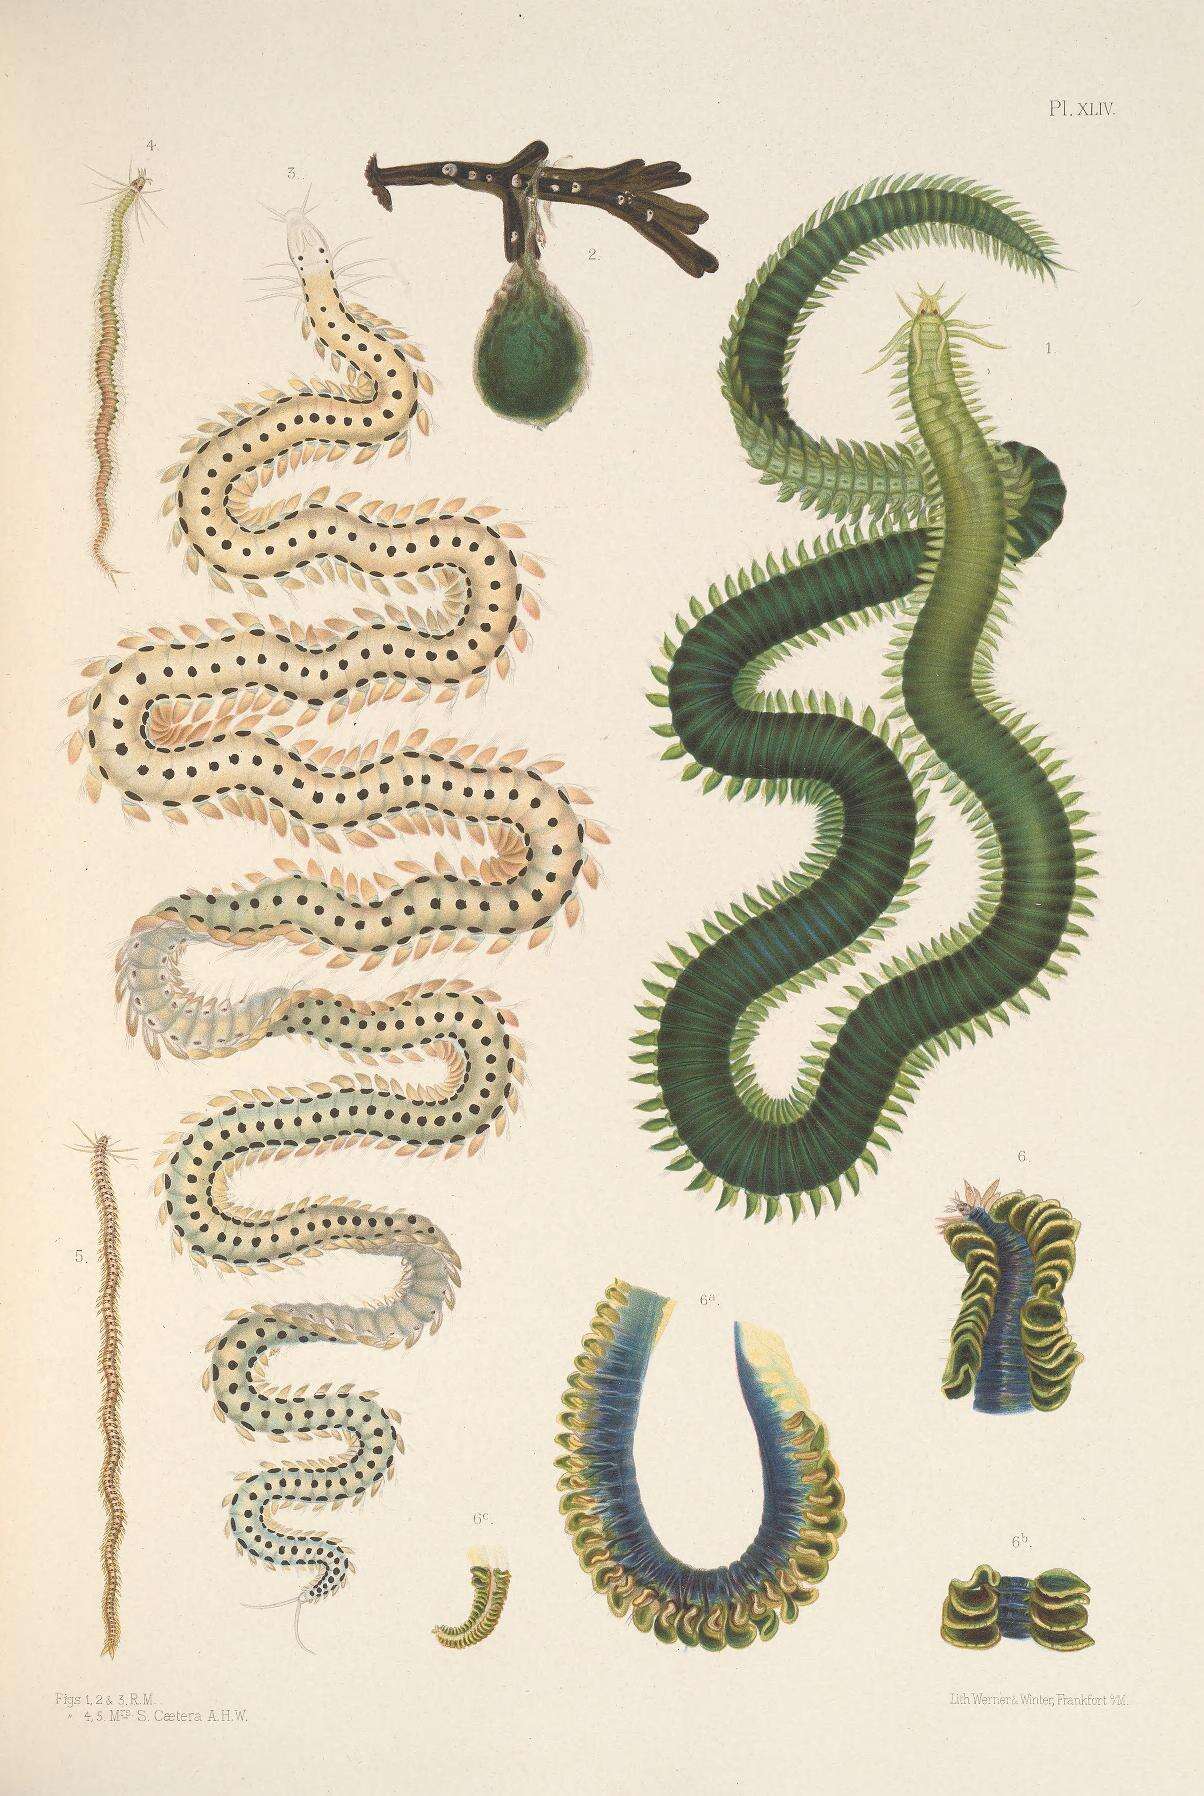 Plancia ëd Eulalia viridis (Linnaeus 1767)